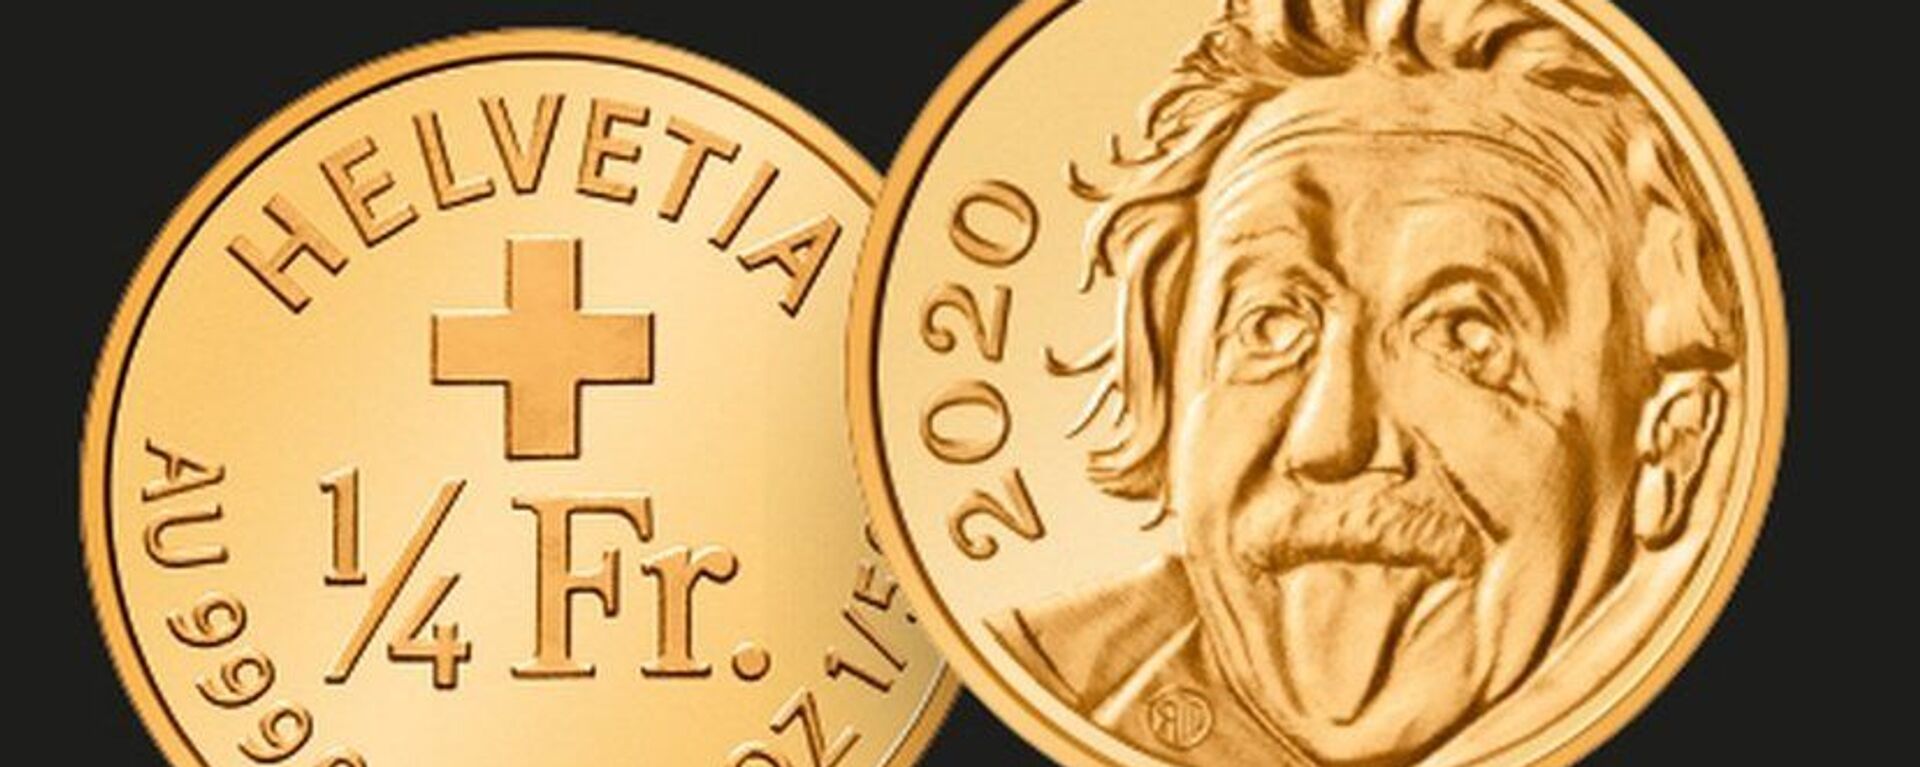 İsviçre'nin ürettiği 'Einstein'lı hatıra parası', Guinnes Rekorlar Kitabı'nda - Sputnik Türkiye, 1920, 14.04.2021